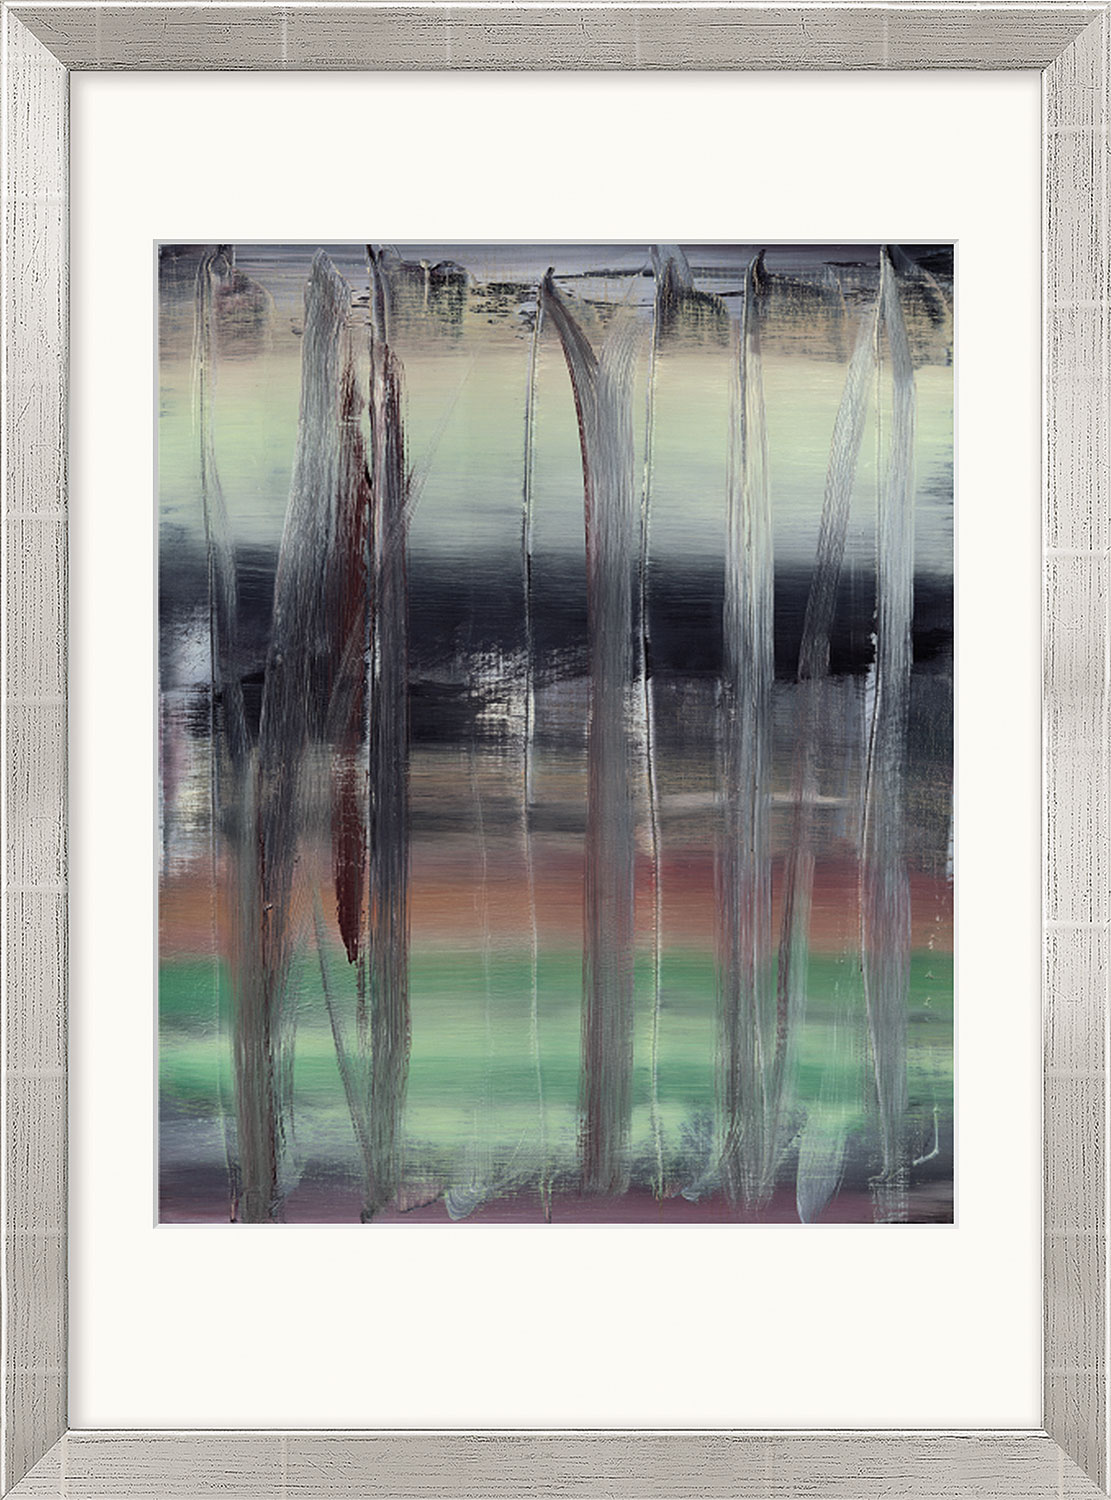 Gerhard Richter: Bild 'Abstraktes Bild' (1992), gerahmt